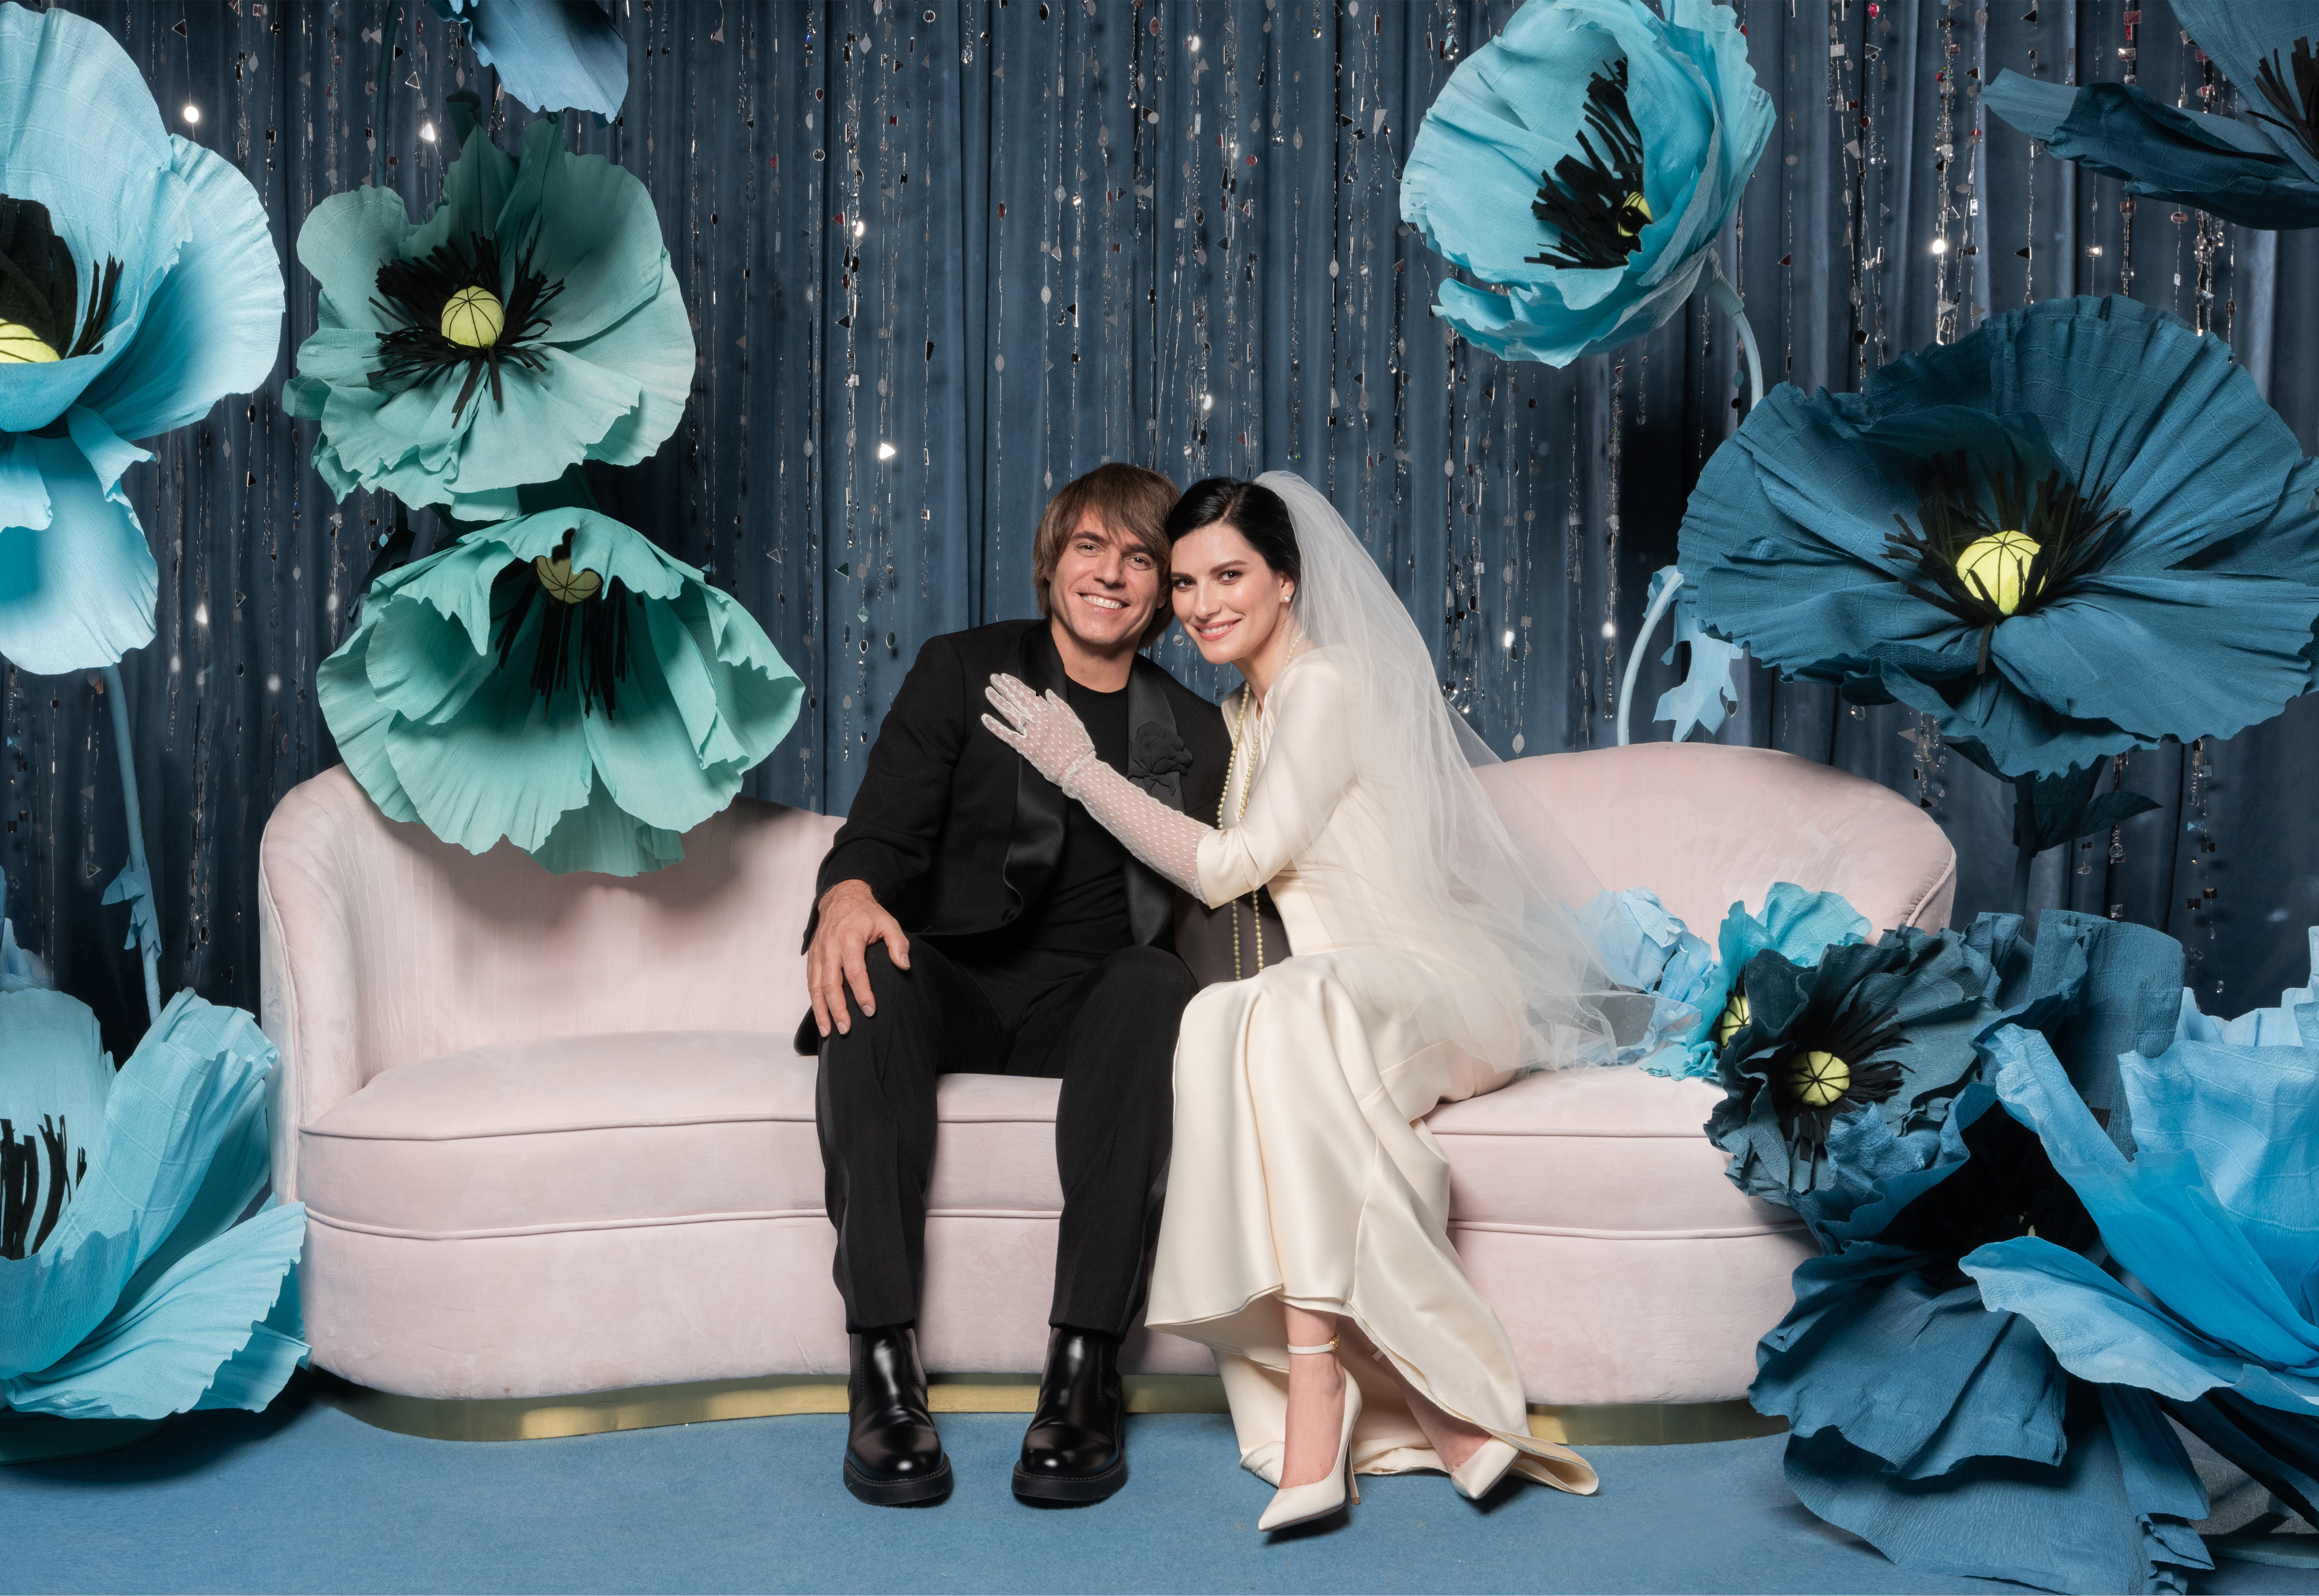 Laura Pausini celebró su unión con el músico Paolo Carta tras 18 años de relación y dos intentos fallidos de boda Foto: EFE